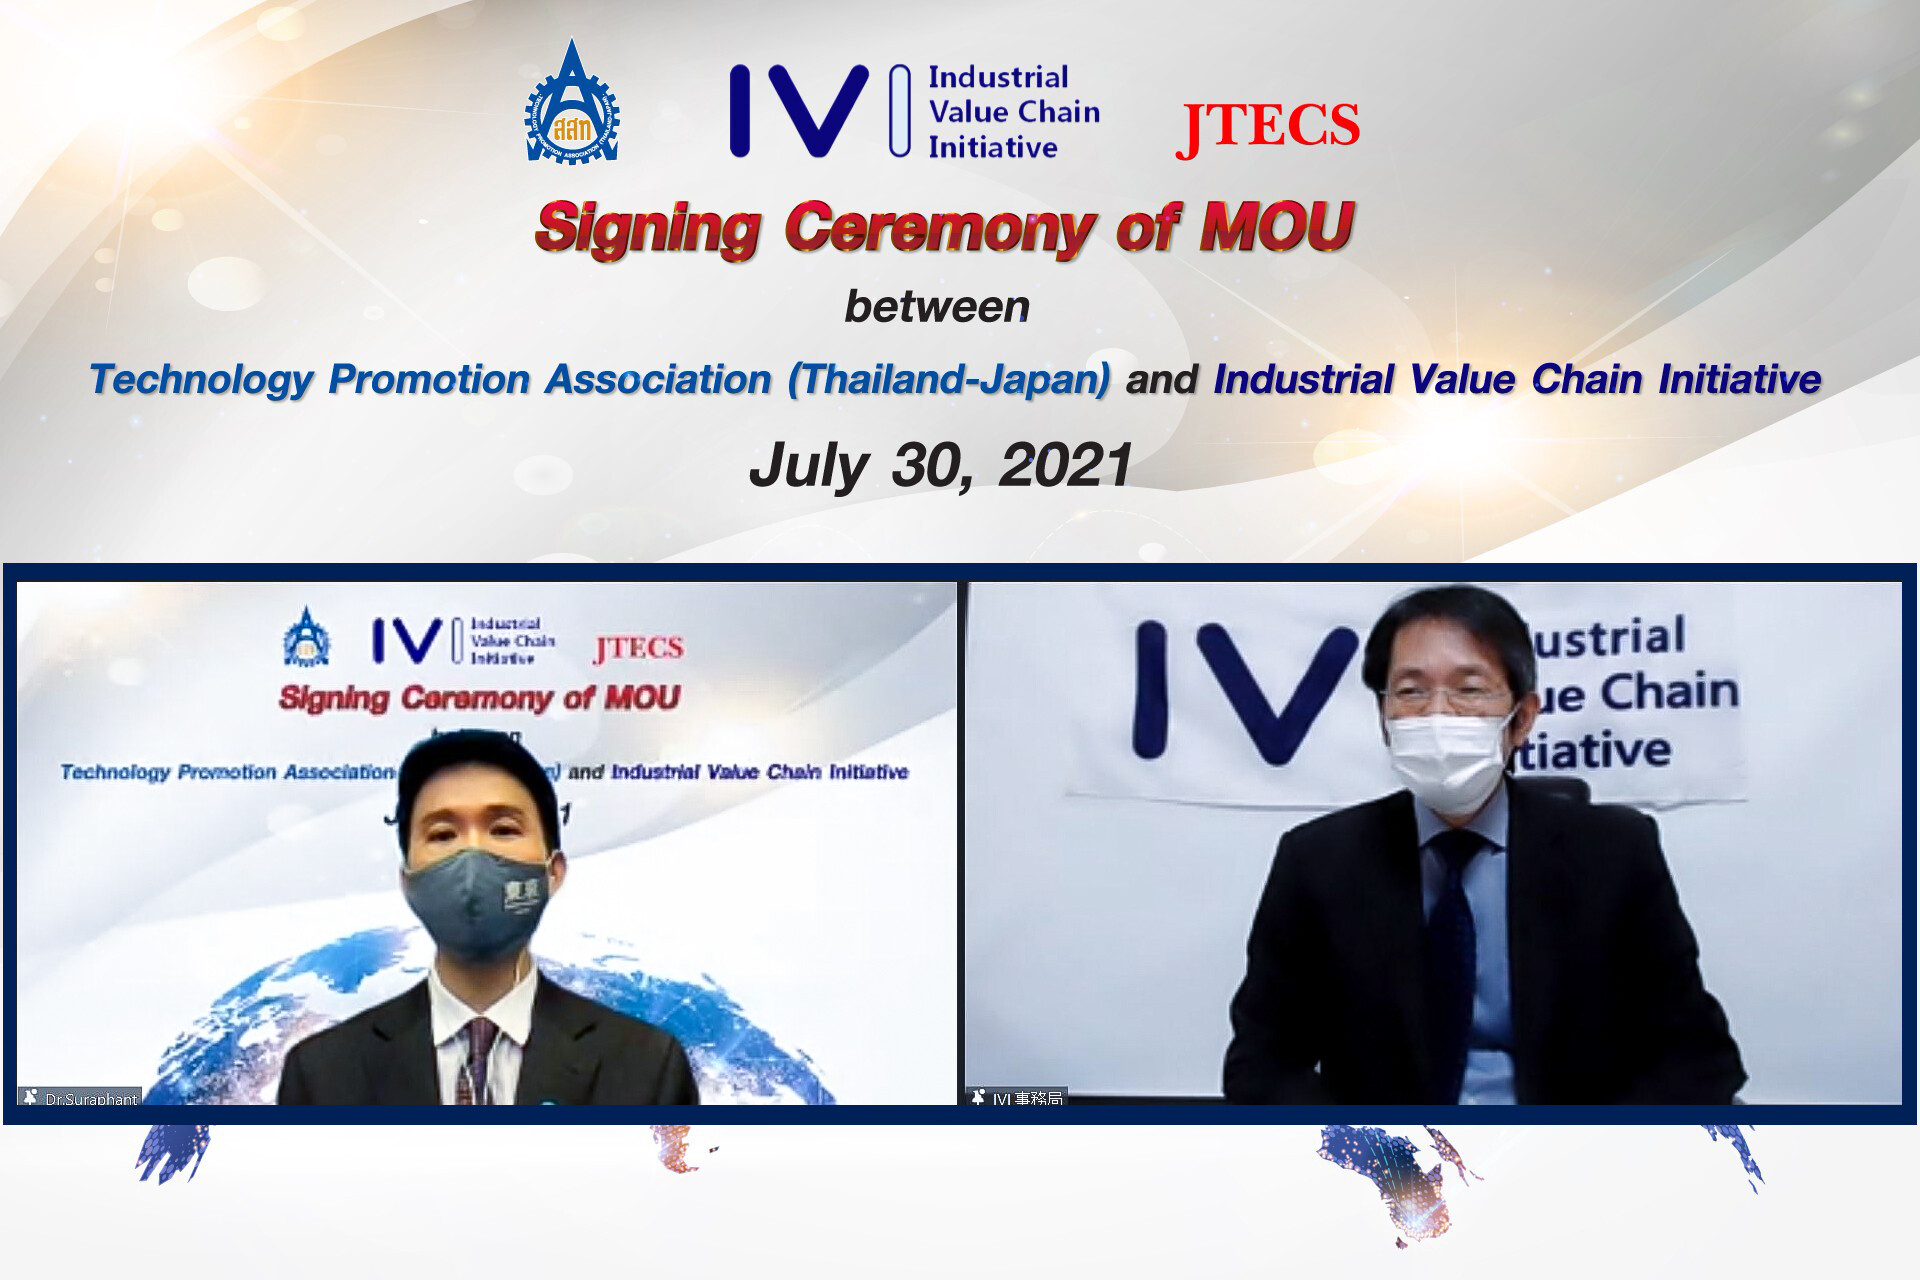 ส.ส.ท. จับมือ IVI เซ็น MOU ร่วมพัฒนาอุตสาหกรรมไทยให้ยั่งยืน ด้วย Smart Monodzukuri ผ่าน IVI Model